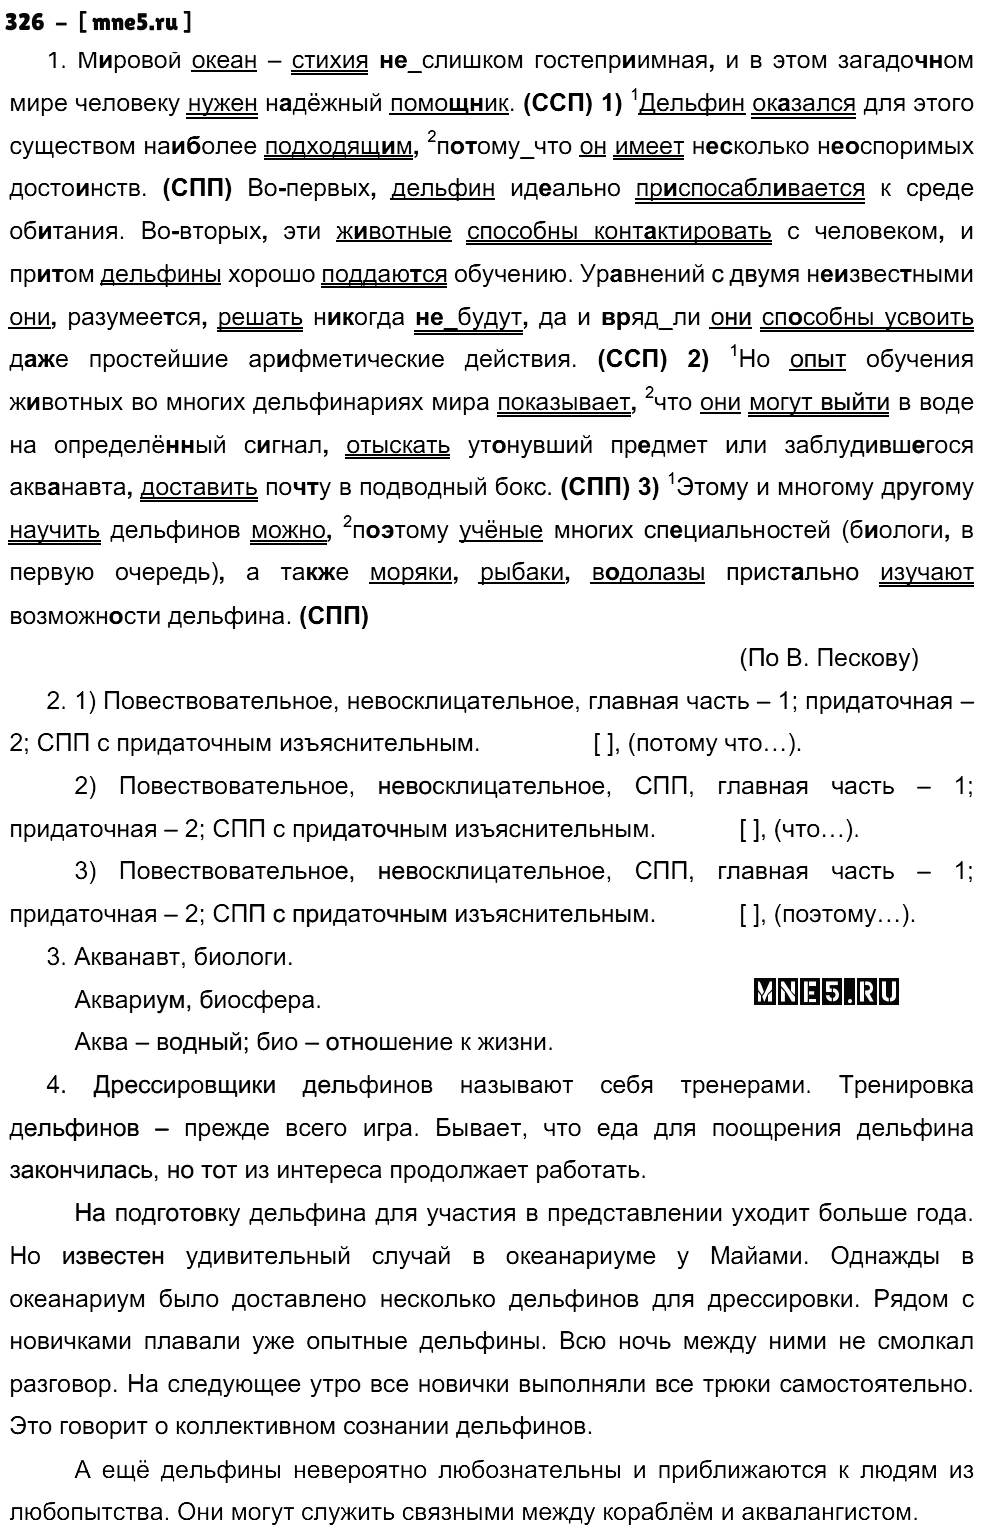 ГДЗ Русский язык 9 класс - 326